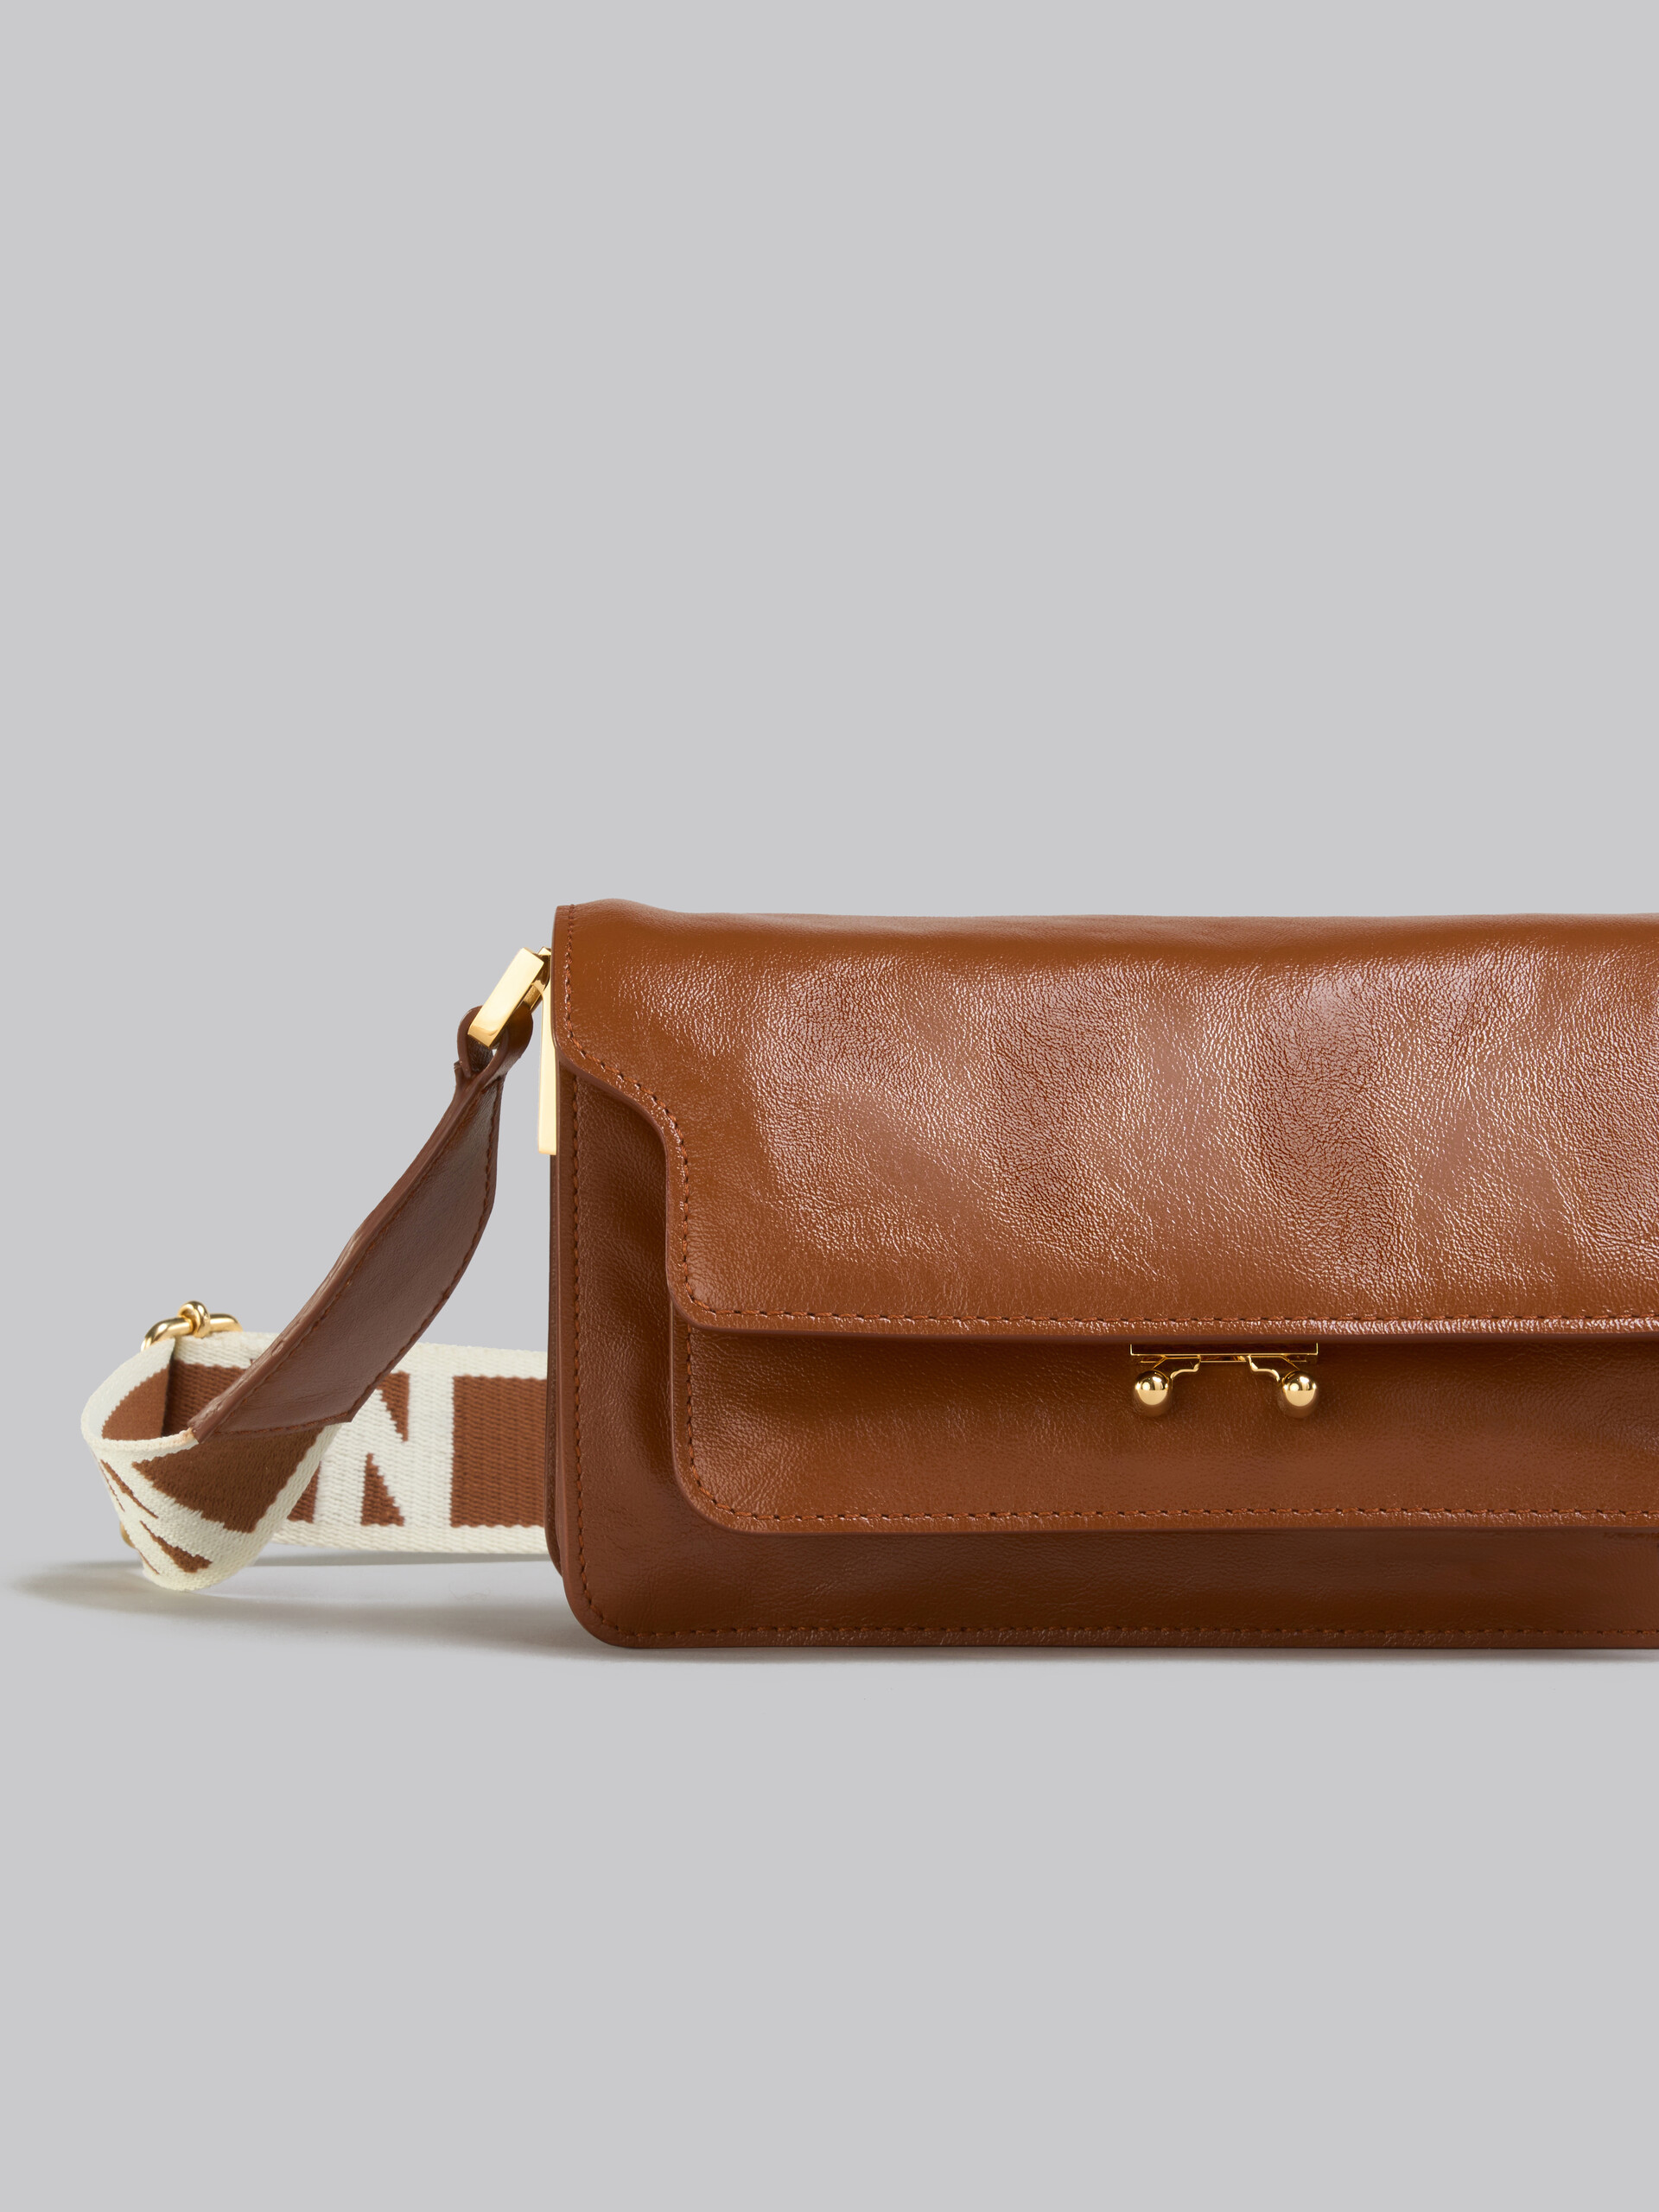 Trunk Soft Bag E/W in pelle marrone con tracolla logata - Borse a spalla - Image 5